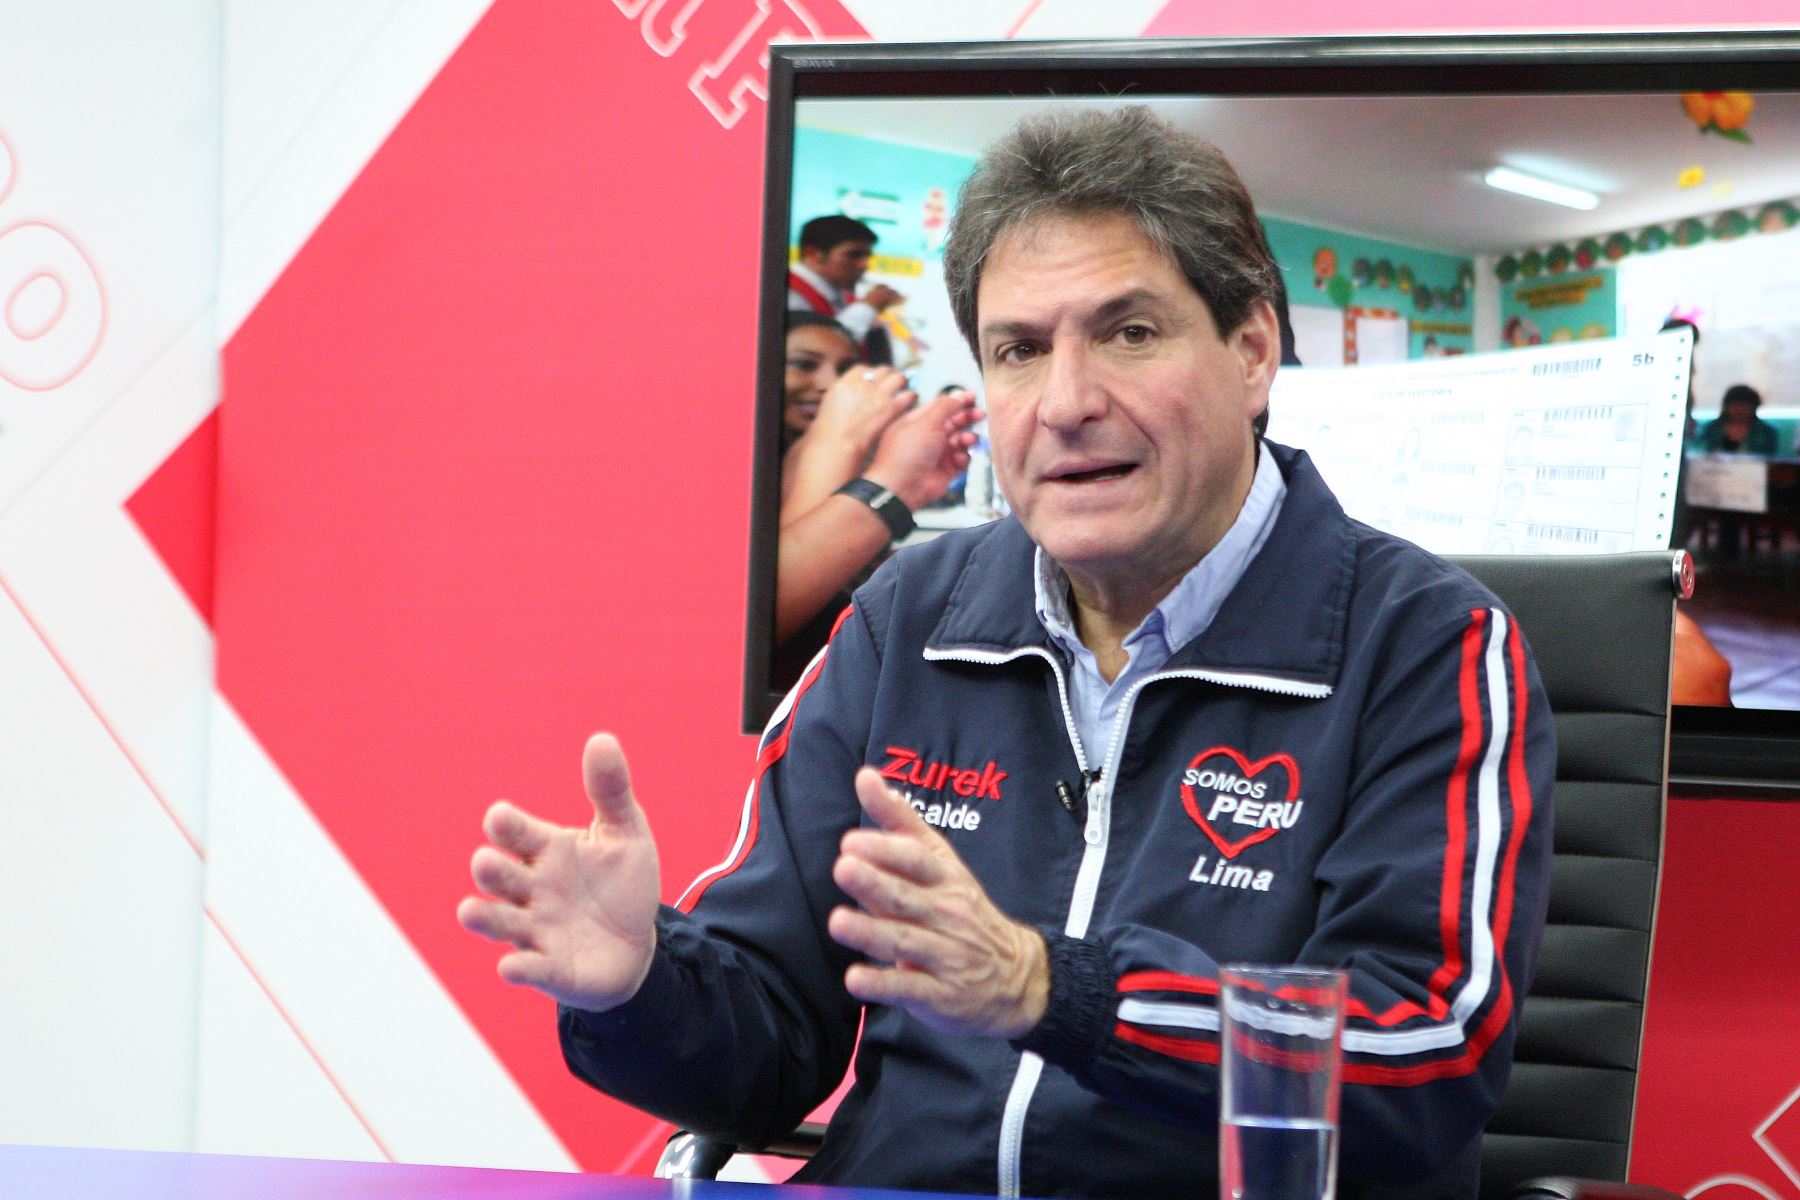 Somos Perú quiere expulsar a Martín Vizcarra del partido